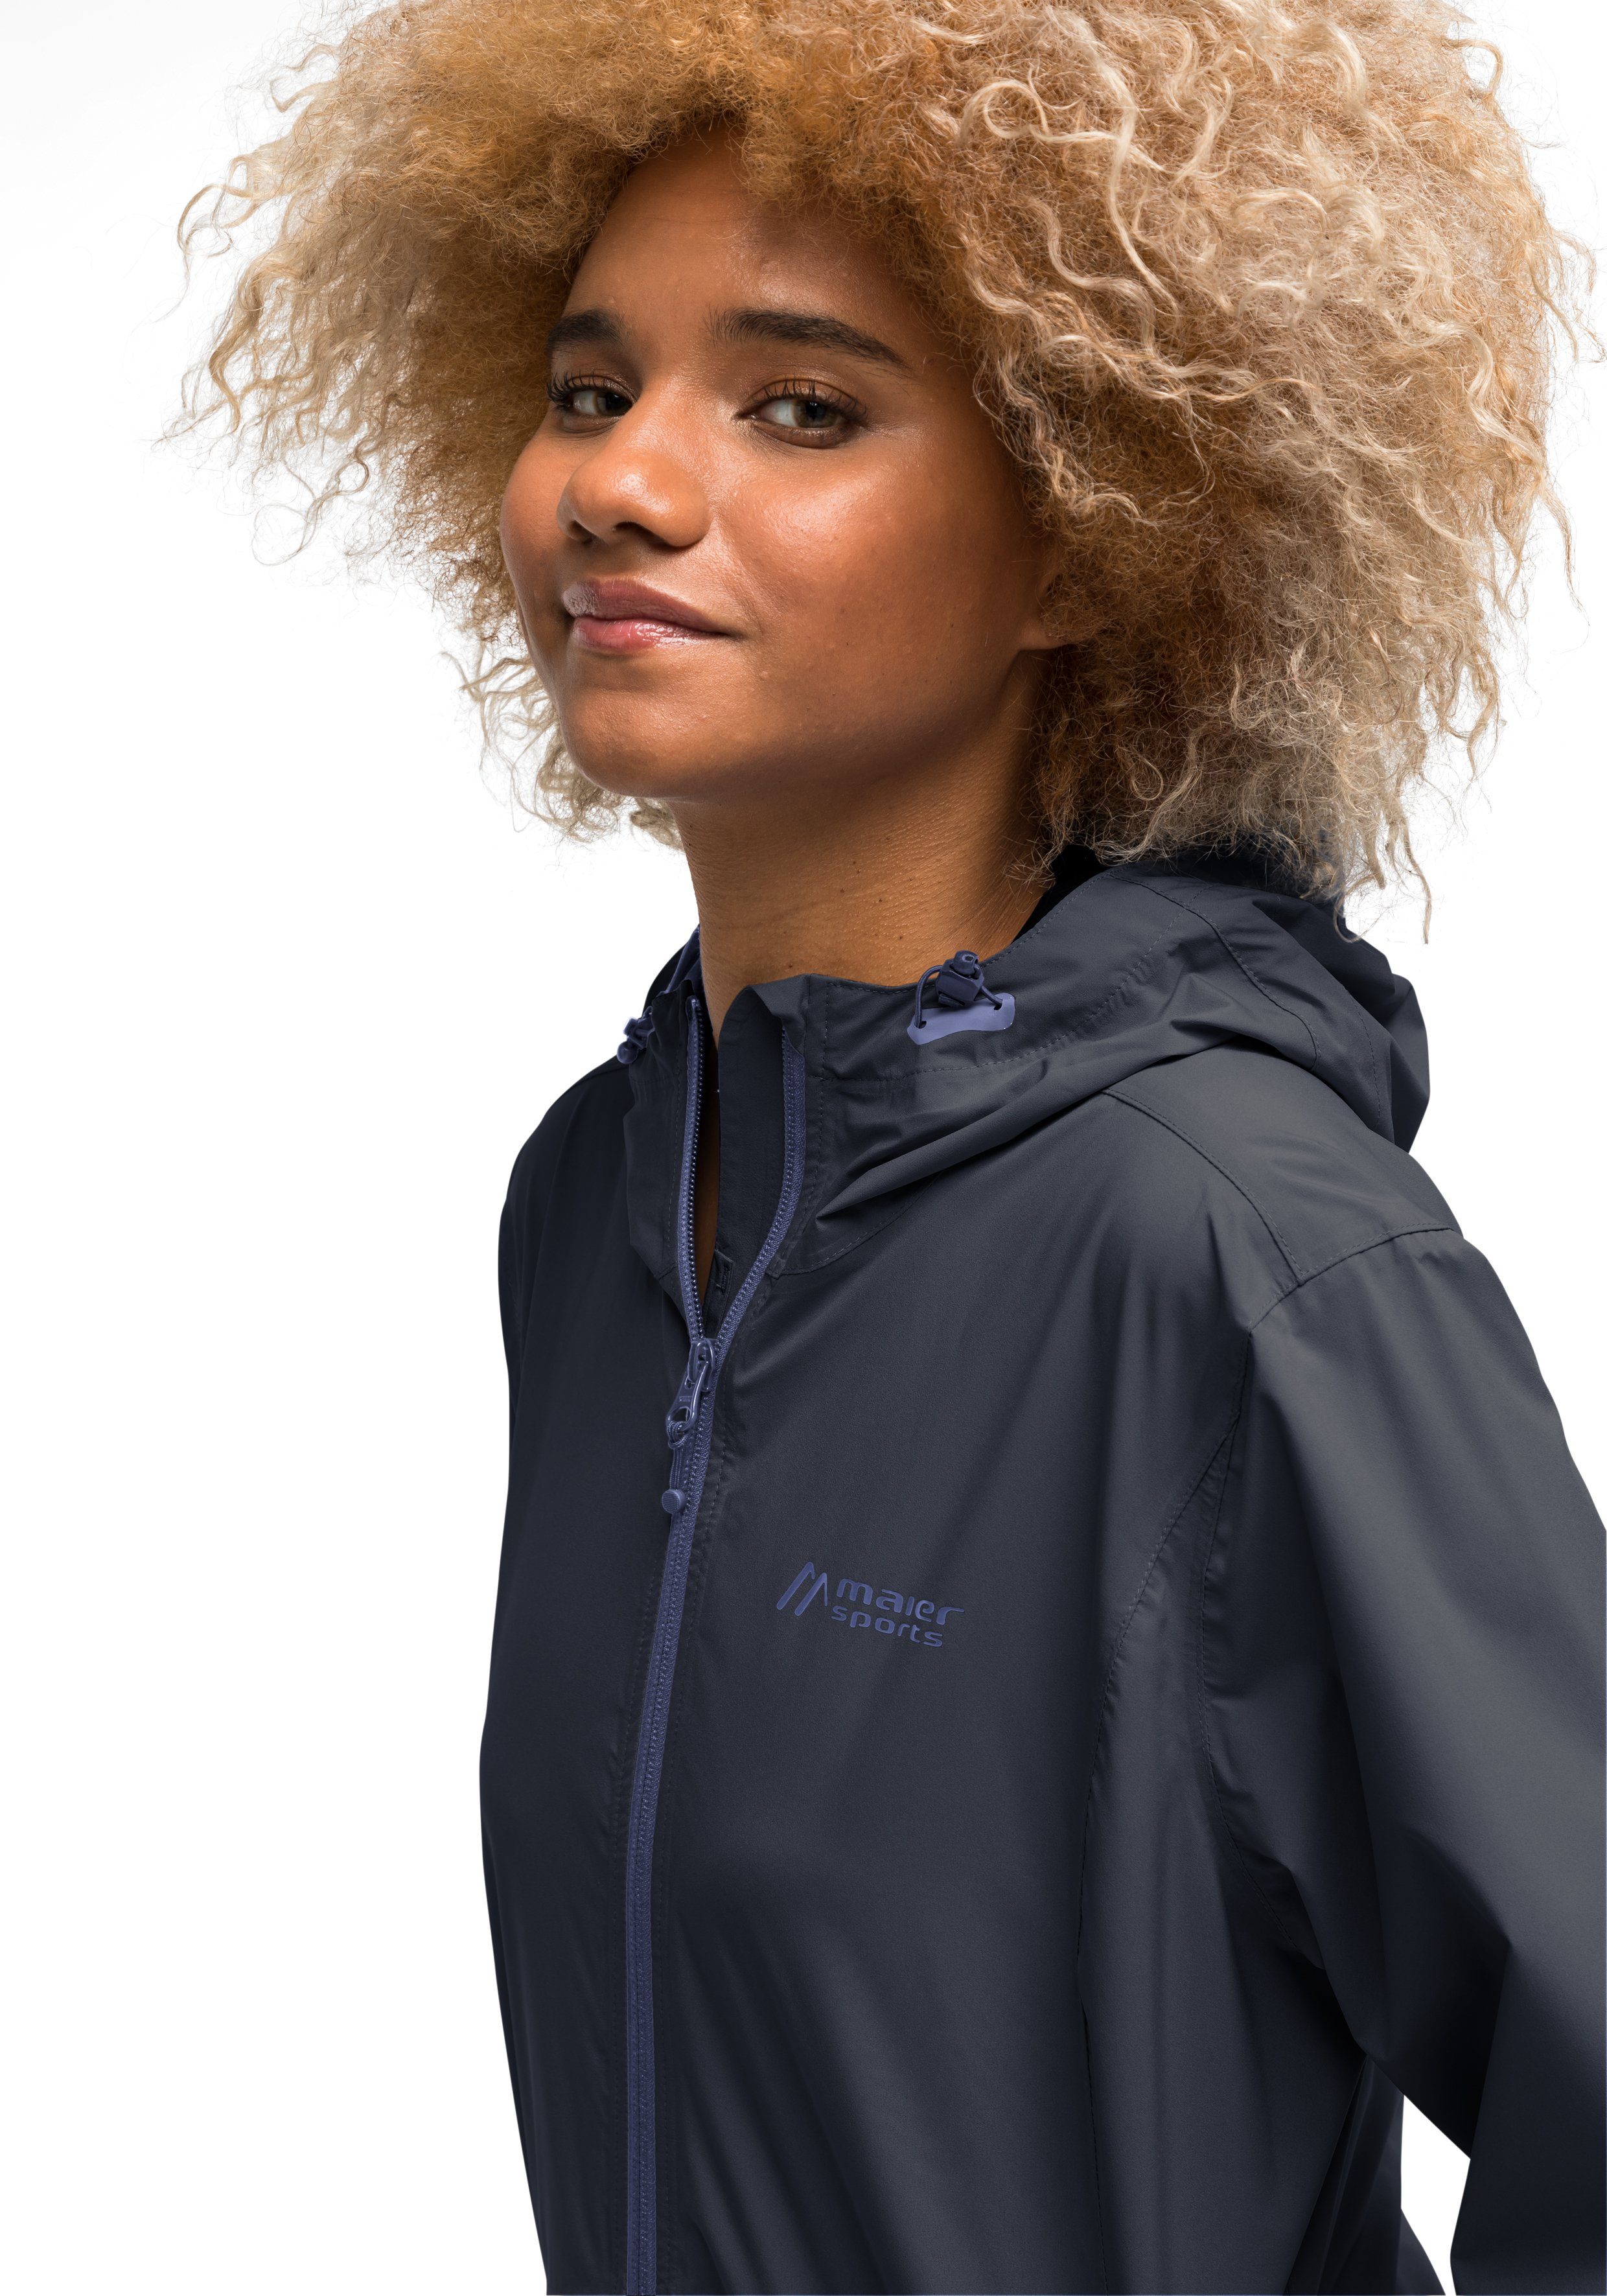 Maier Sports Funktionsjacke Tind Eco W für Touren Wanderungen und Minimalistische dunkelblau 2,5-Lagen-Jacke